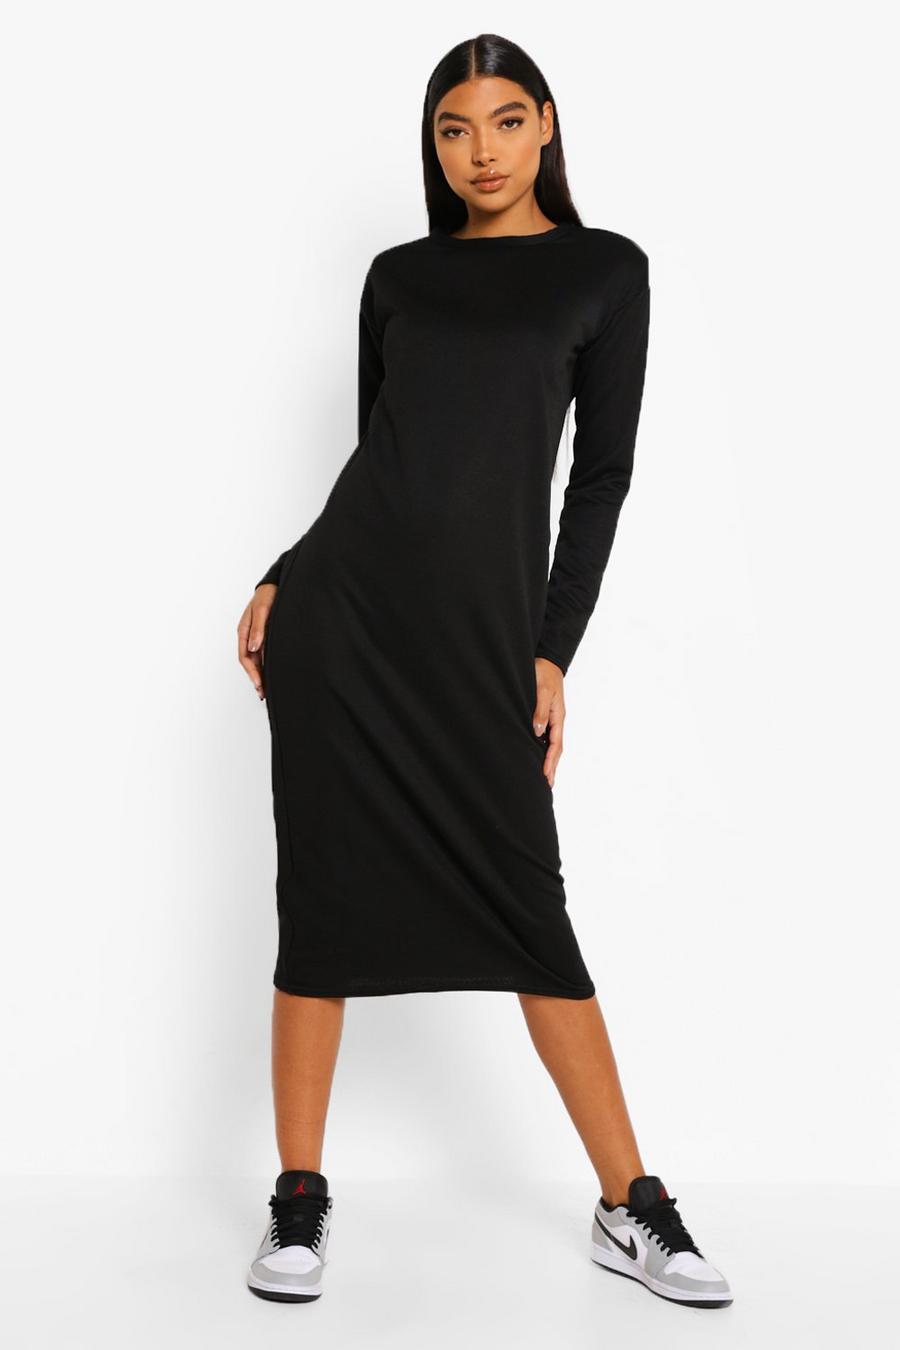 שחור שמלת מידי עם שרוולים ארוכים וכריות כתפיים לנשים גבוהות image number 1